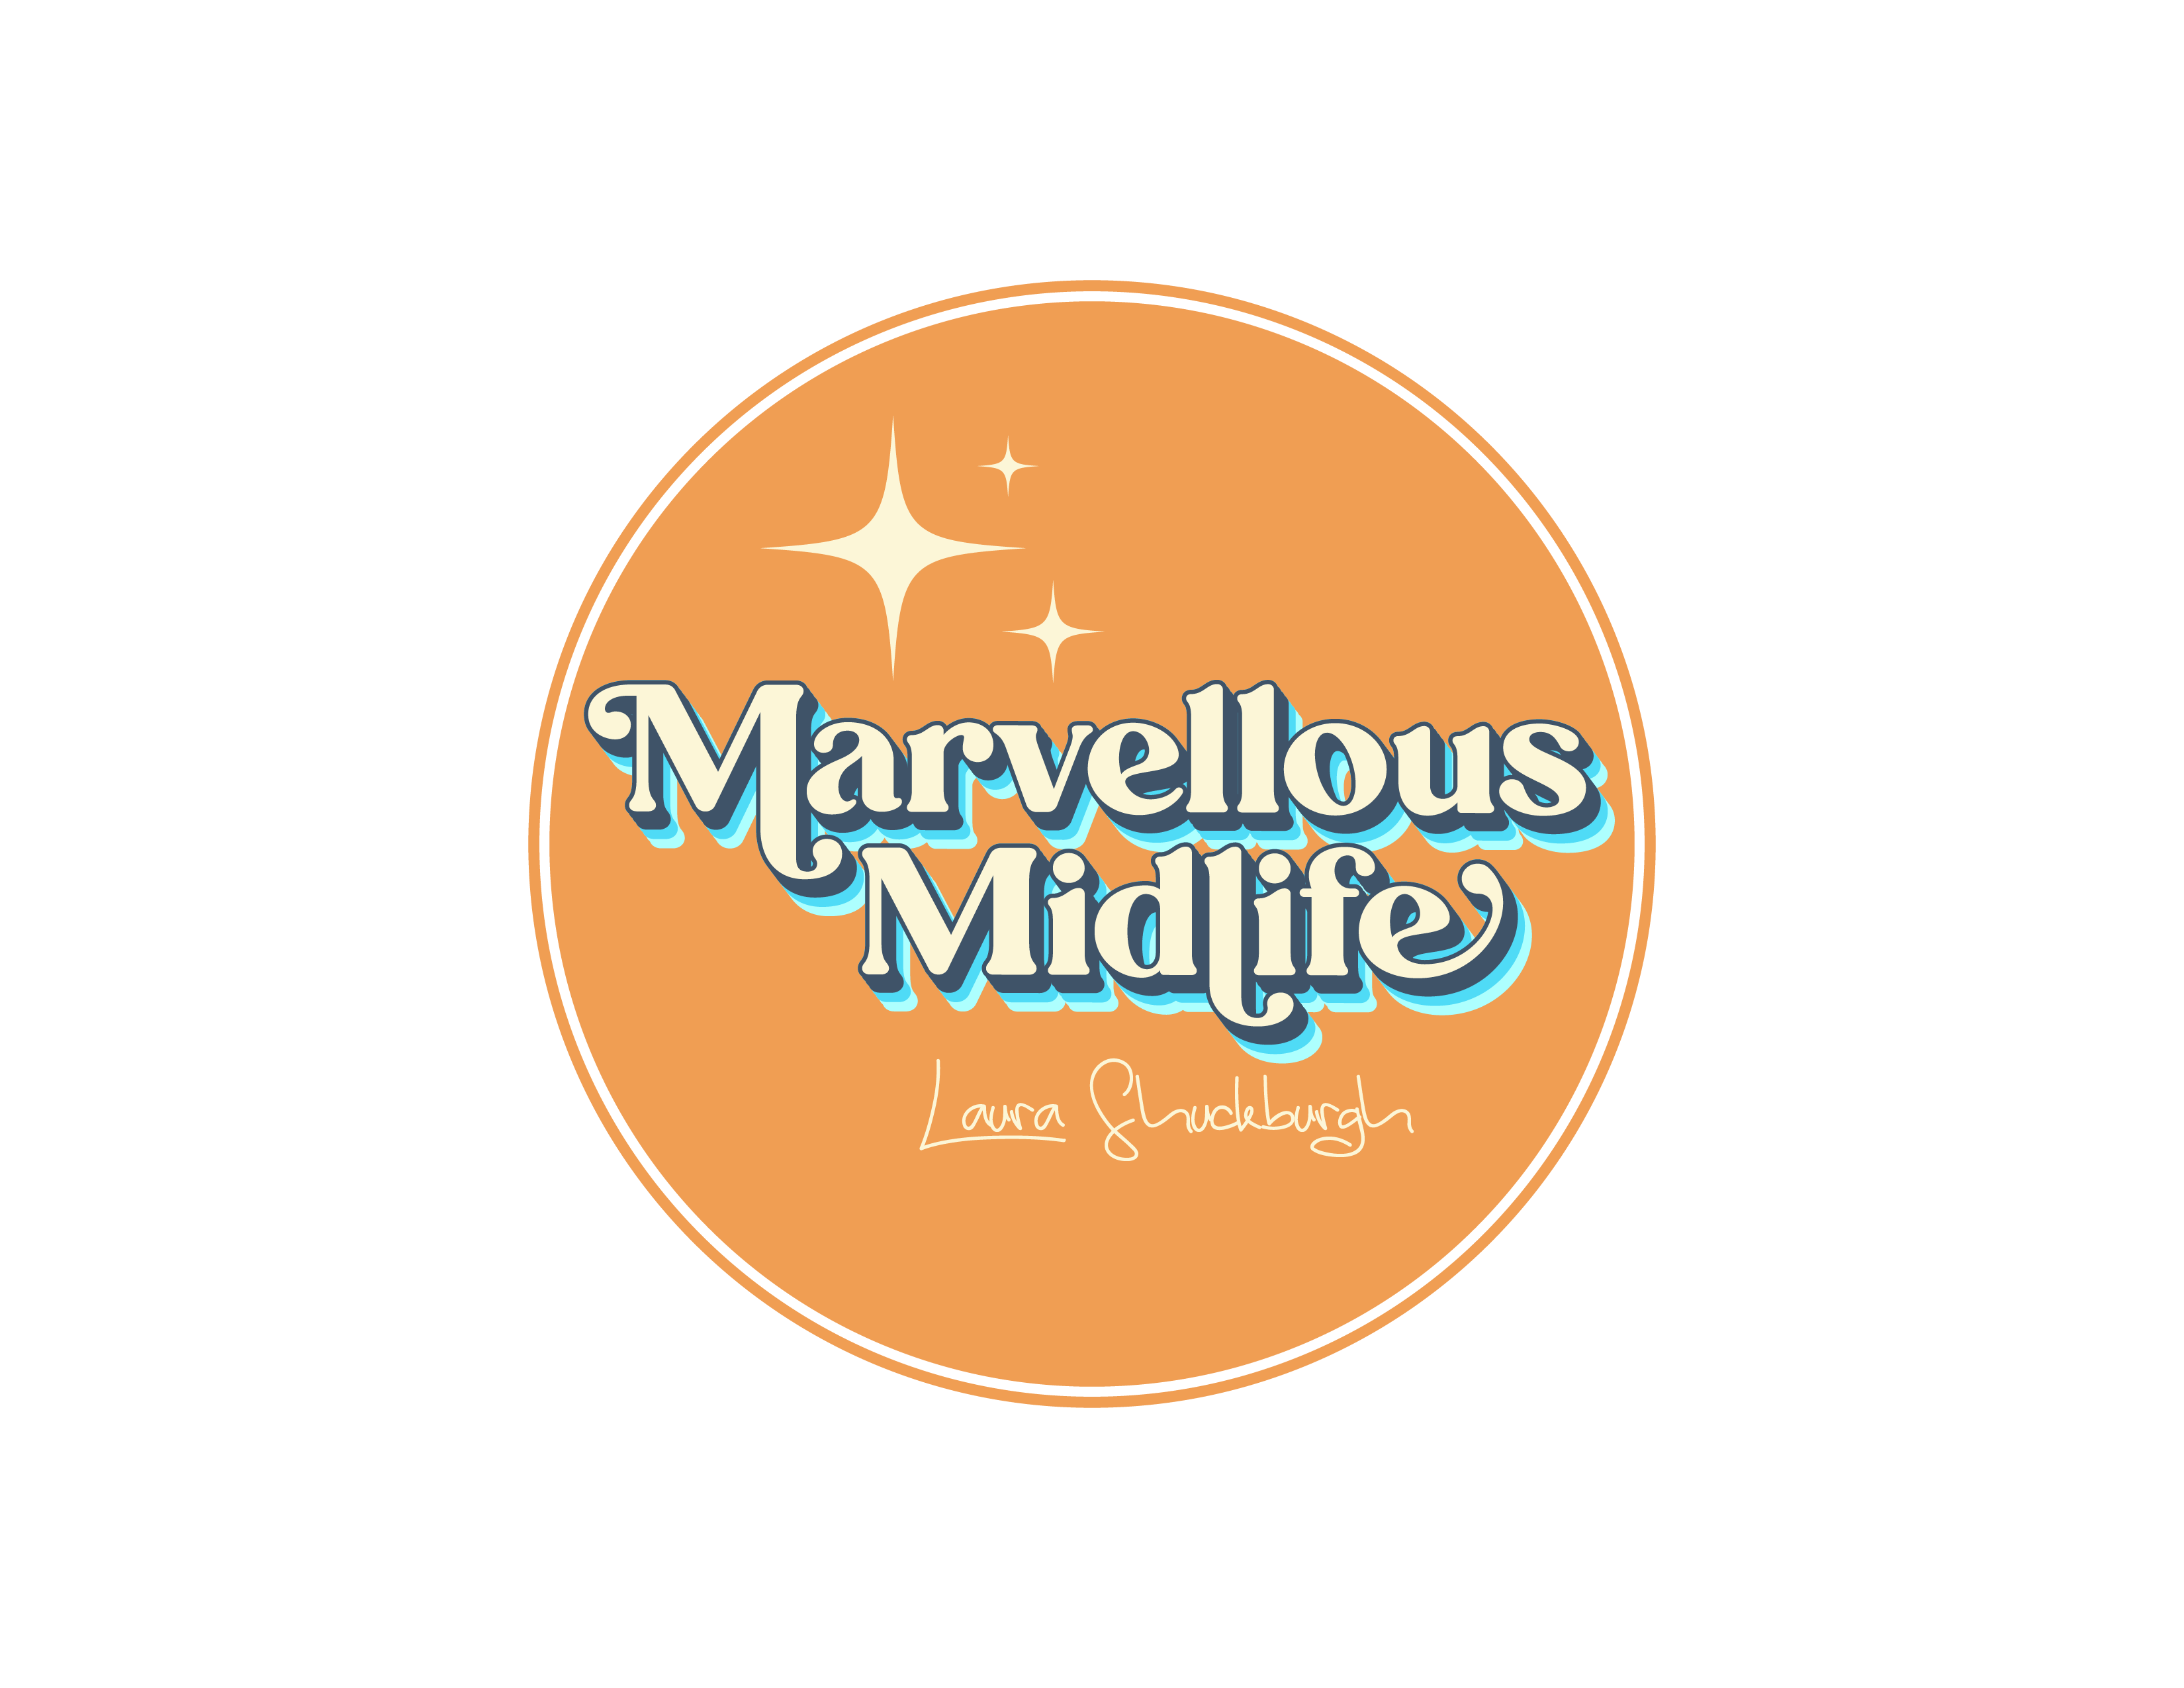 Marvellous midlife logo